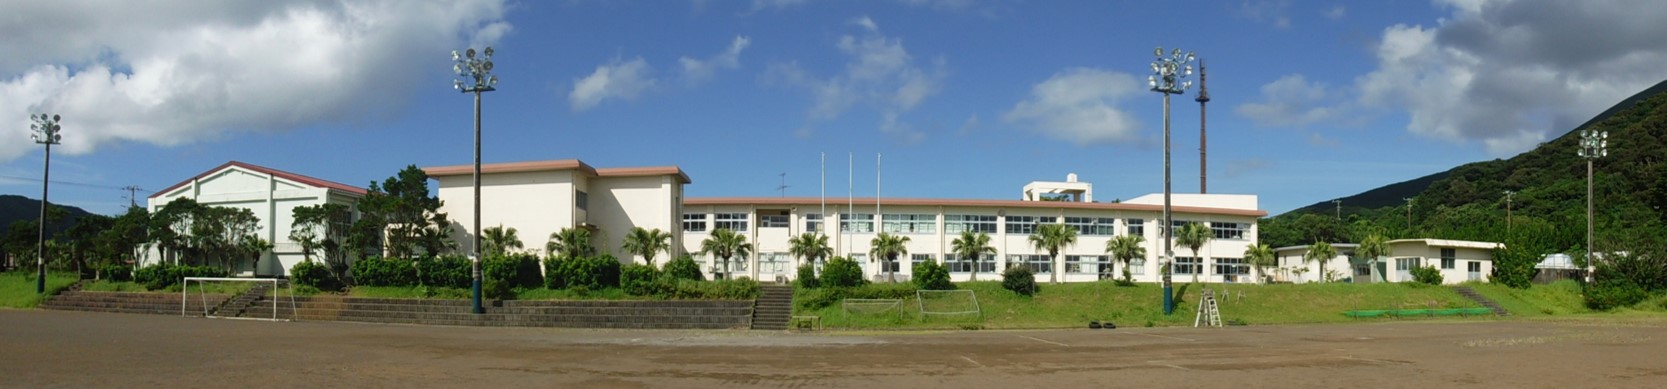 富士中学校校舎